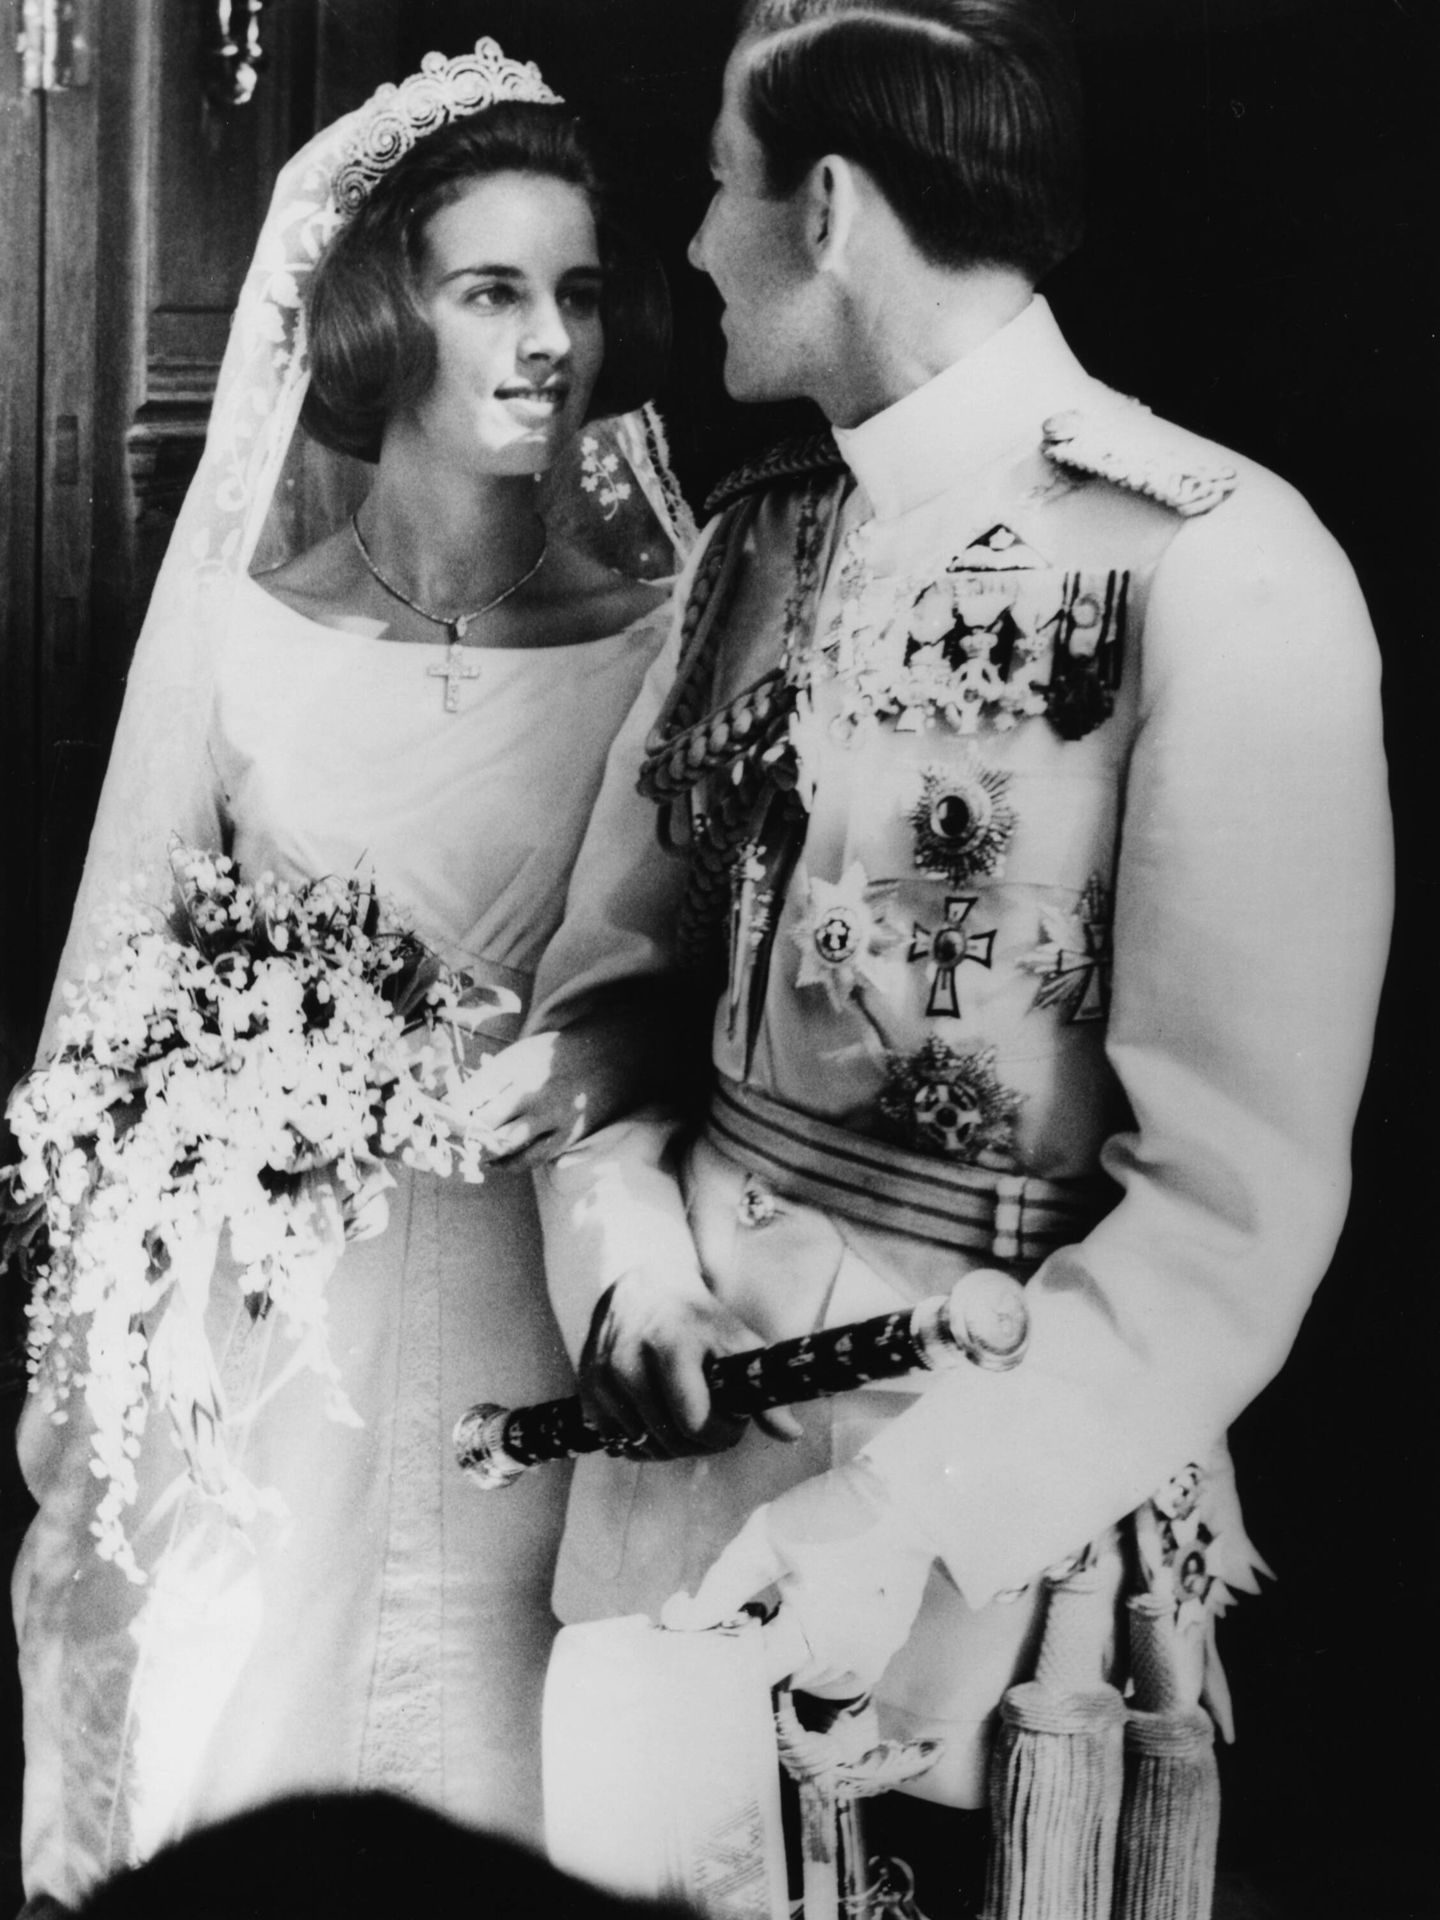 La boda de Constantino y Ana María. (Getty/Hulton Archive)